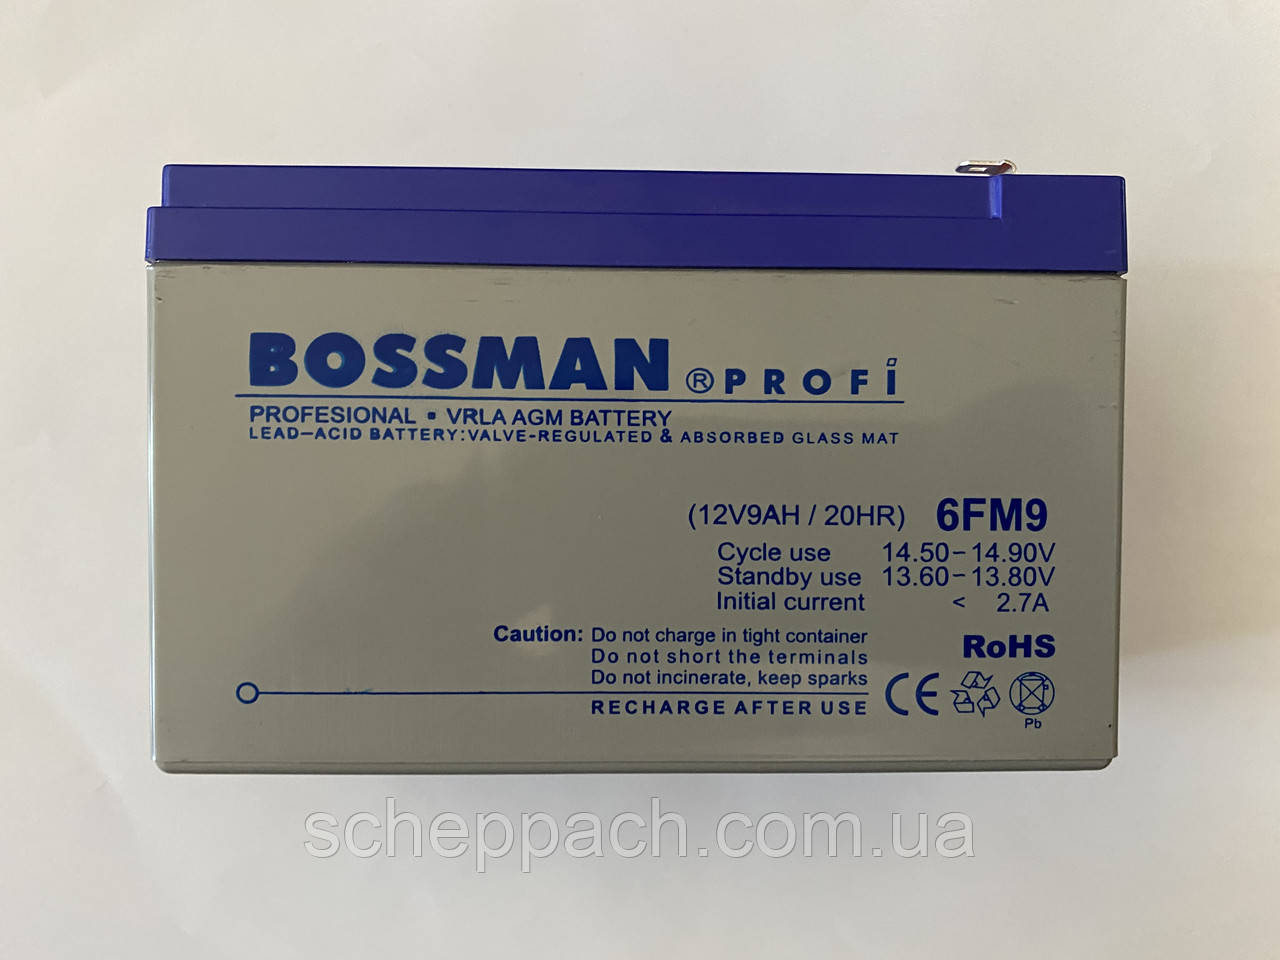 Акумулятор для дитячих електромобілів Bossman-Profi 6FM9